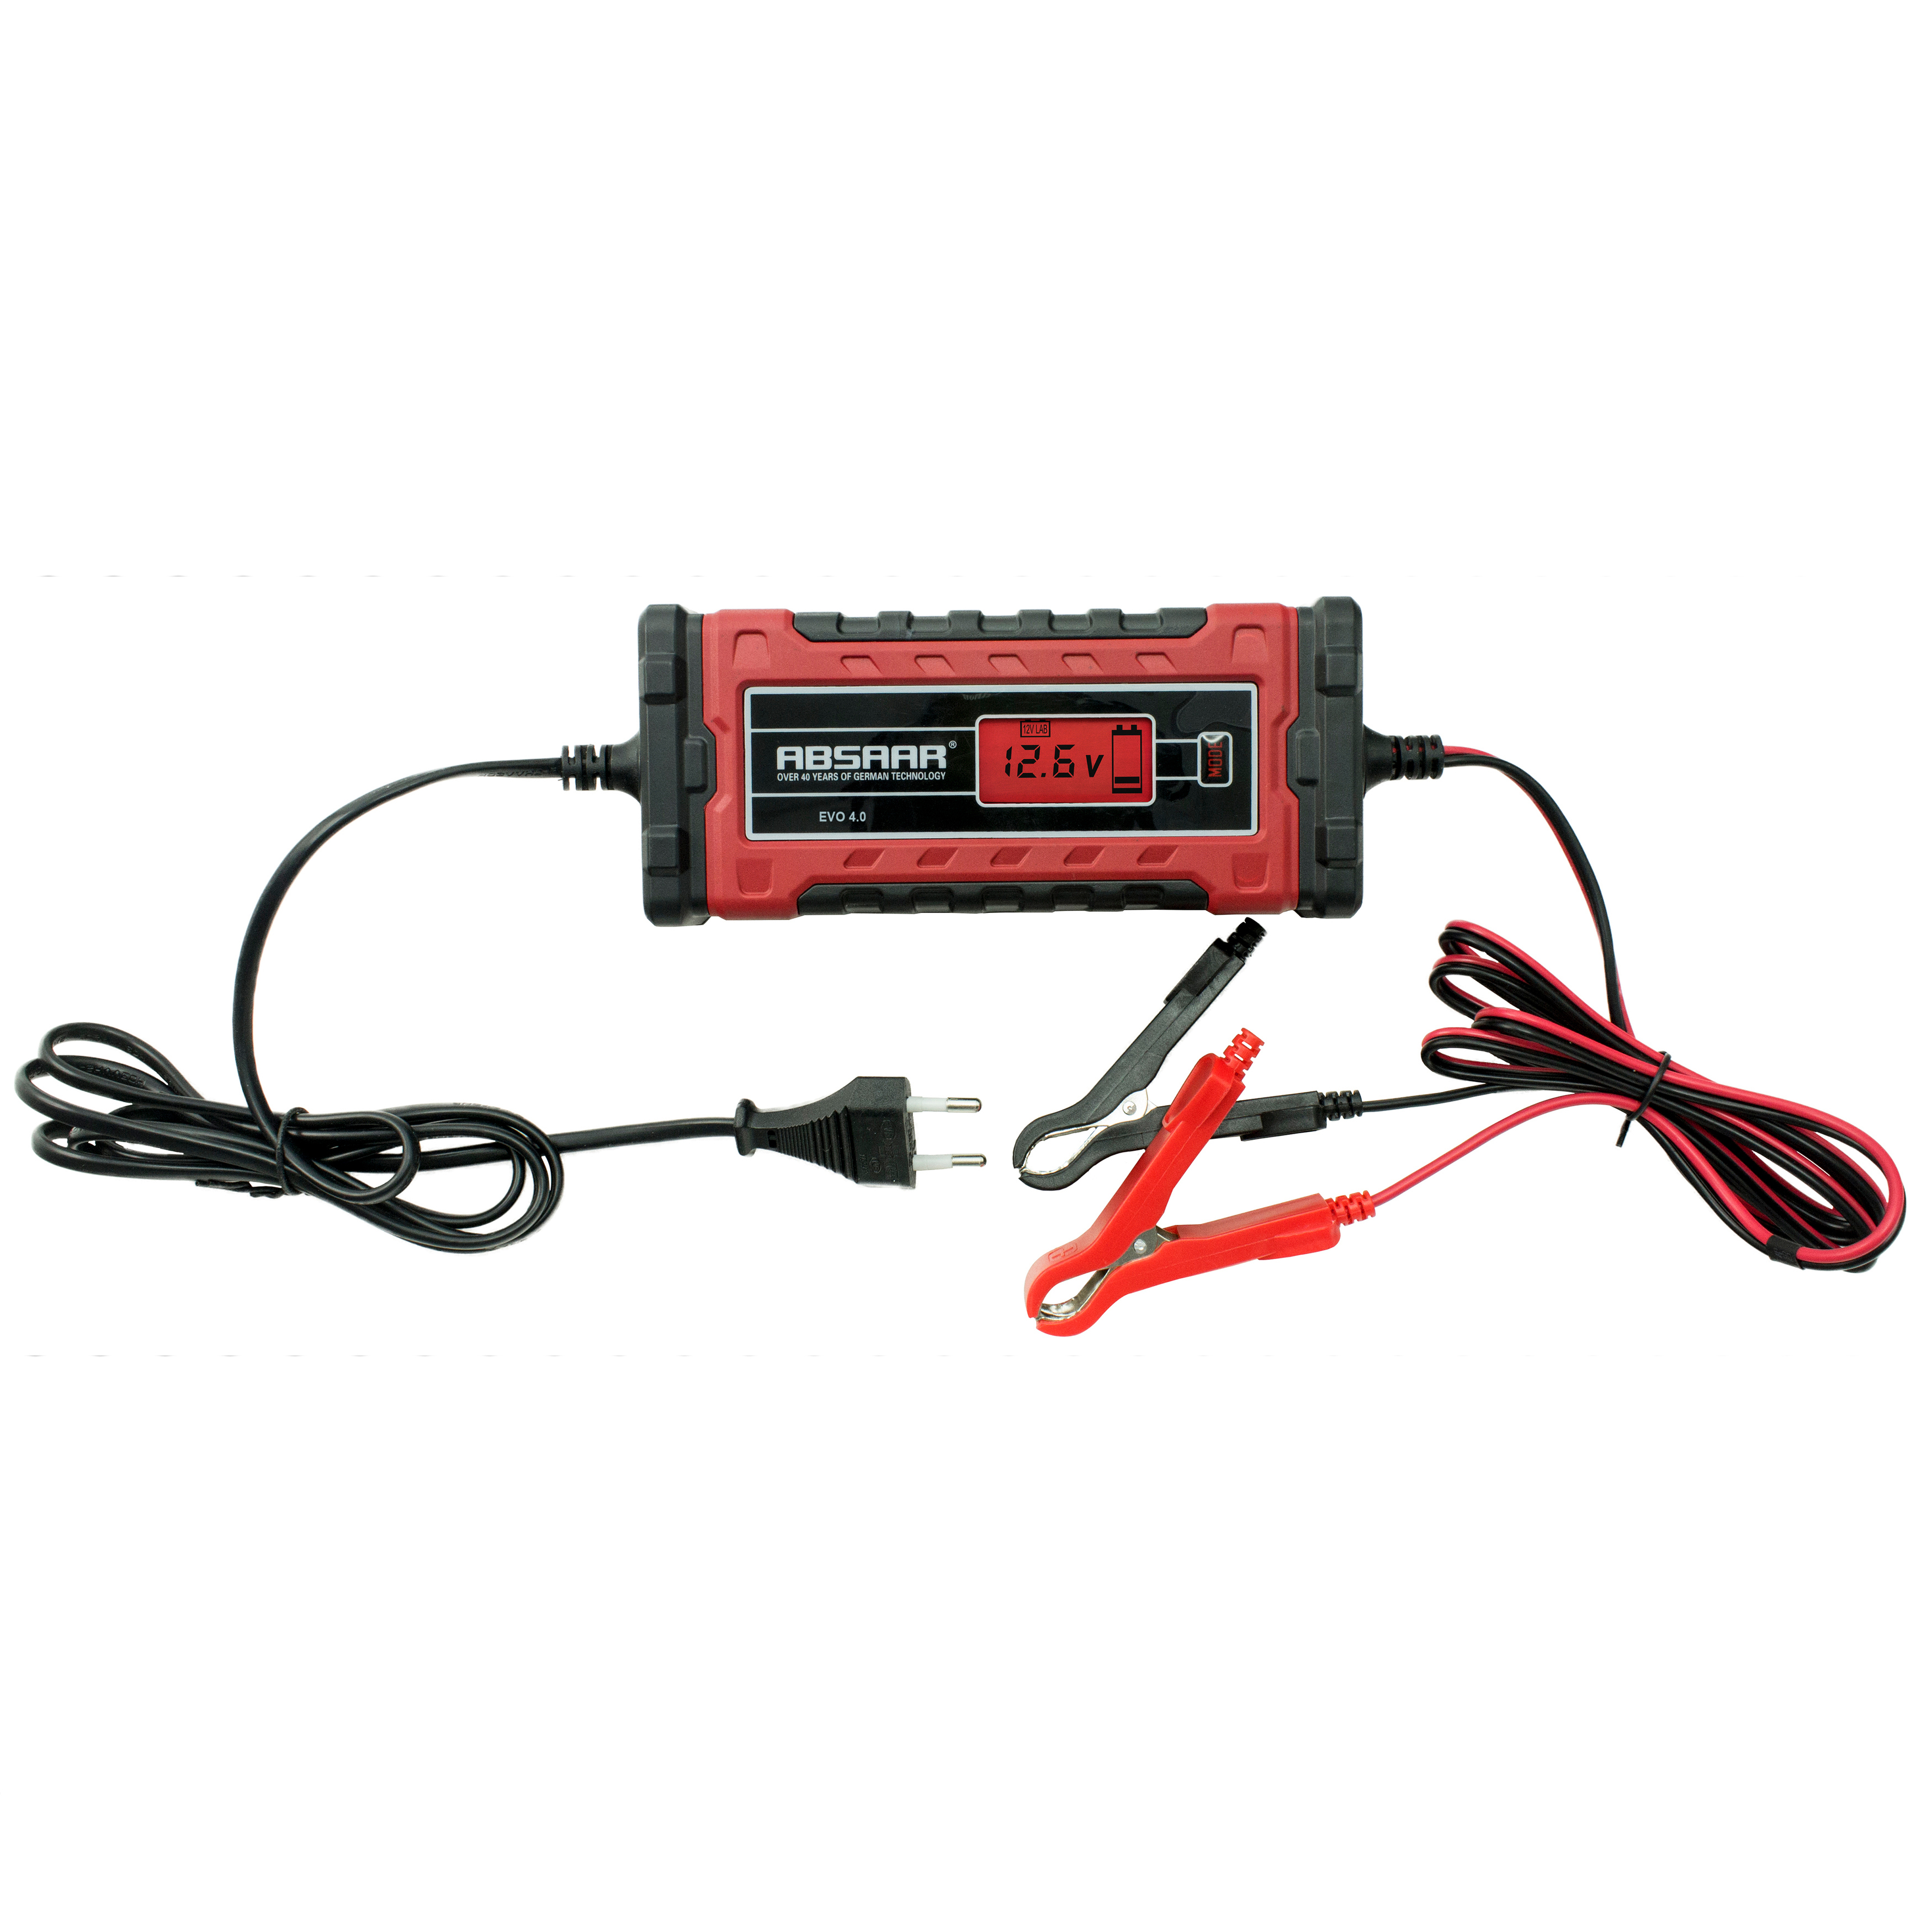 Rot/Schwarz 158001 ABSAAR 4.0 Batterieladegerät, EVO